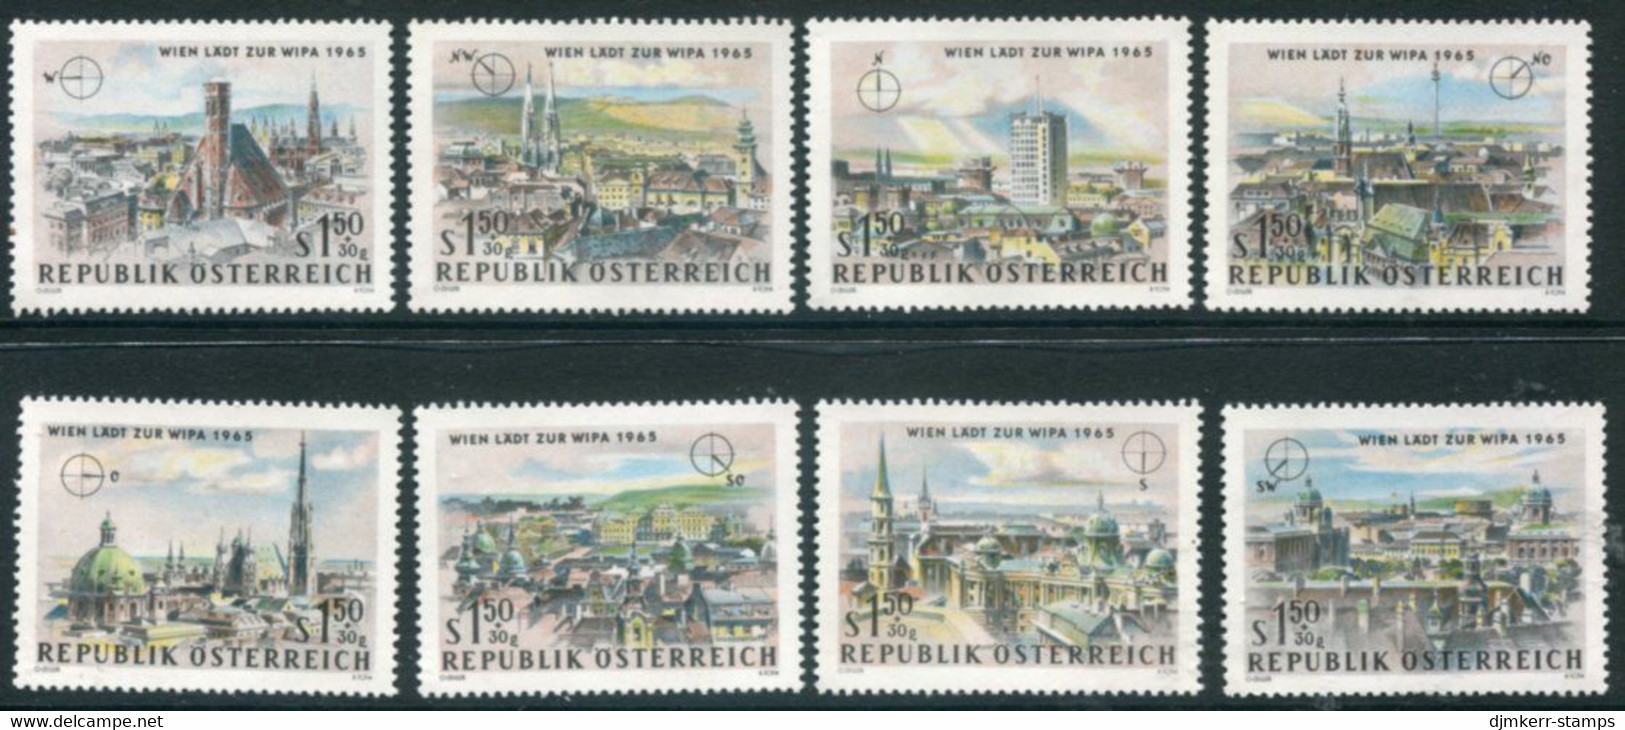 AUSTRIA 1964 WIPA Philatelic Exhibition I MNH / **.  Michel 1164-71 - Ungebraucht